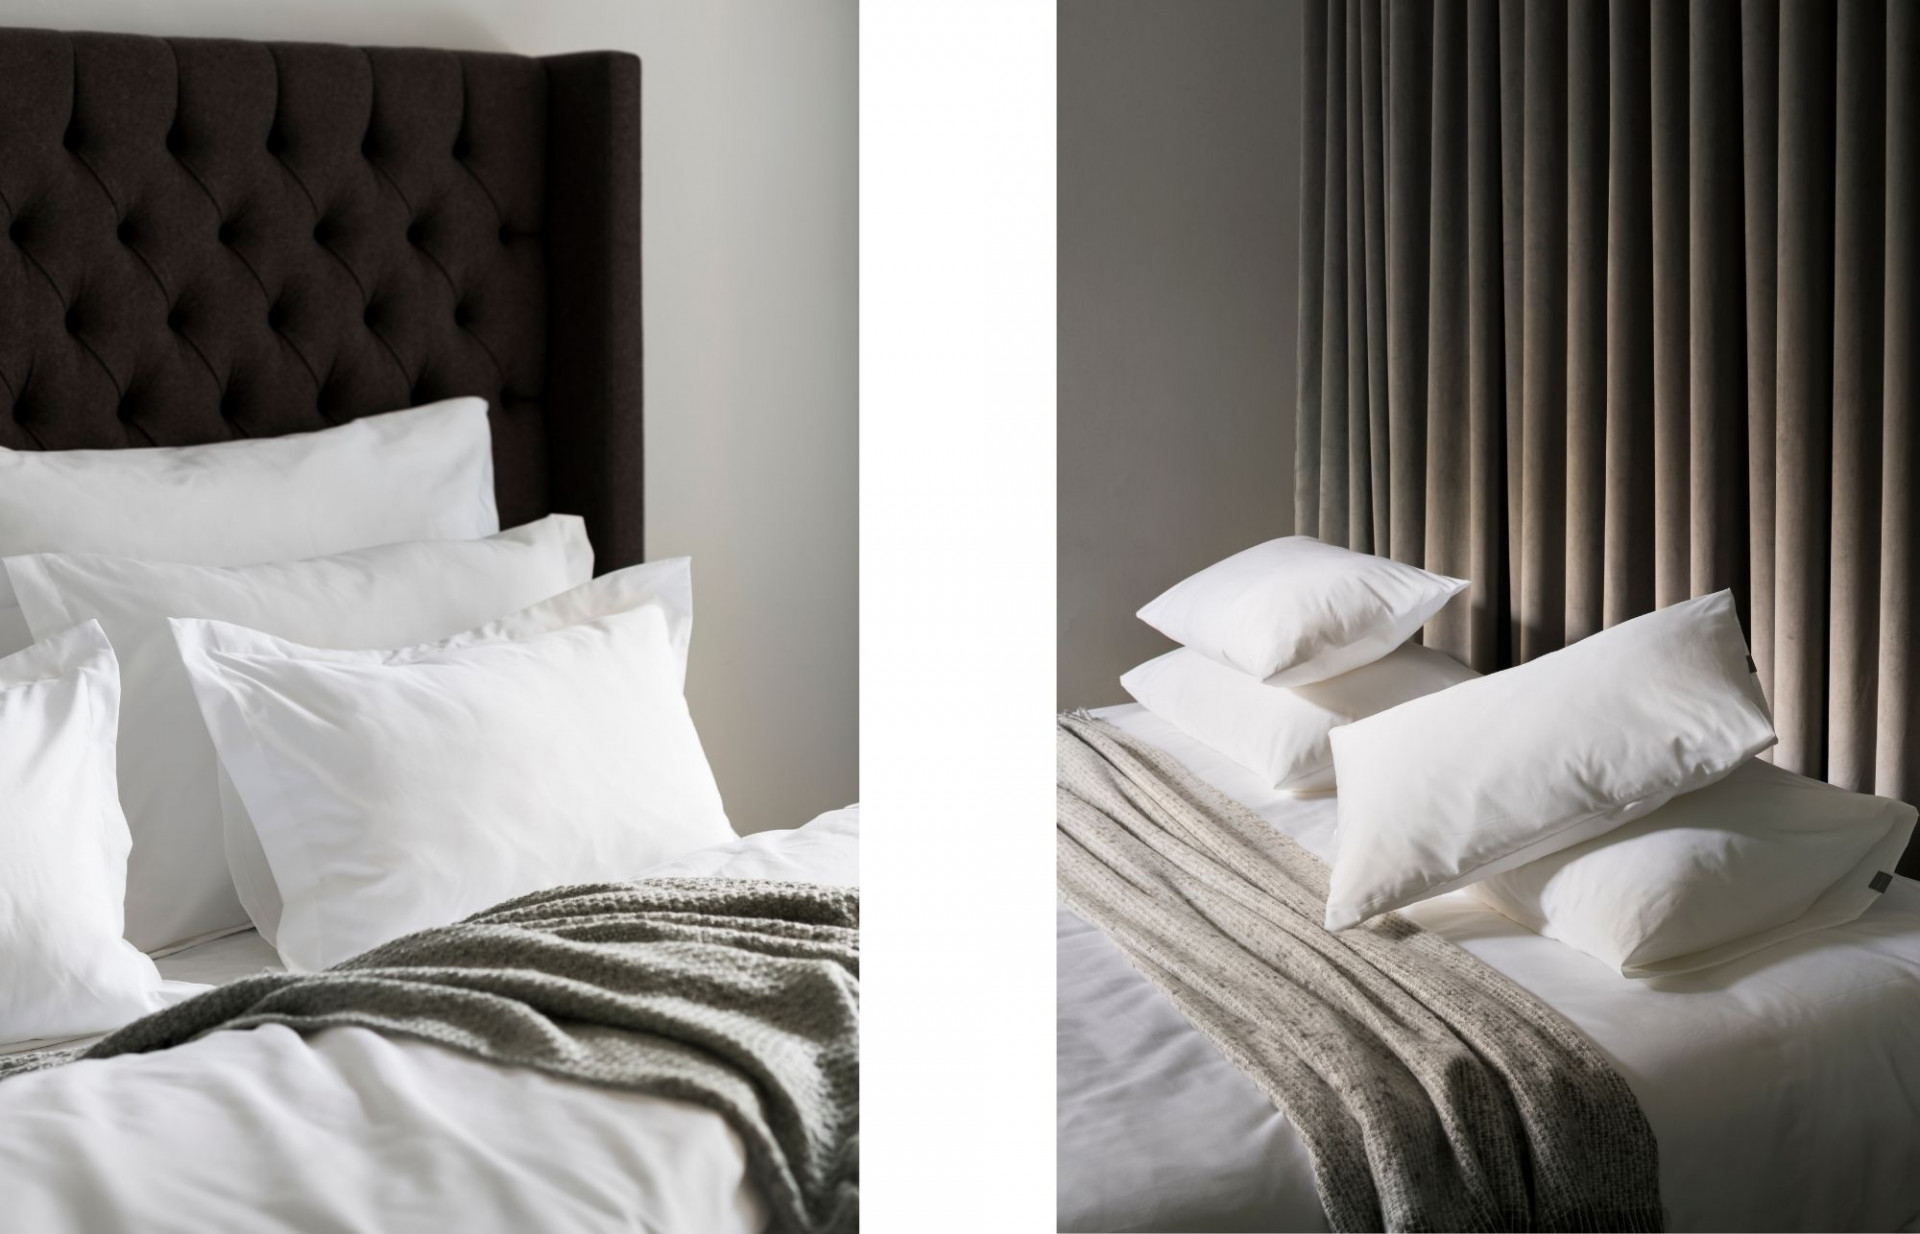 Pillow Menu is now a hotel standard.